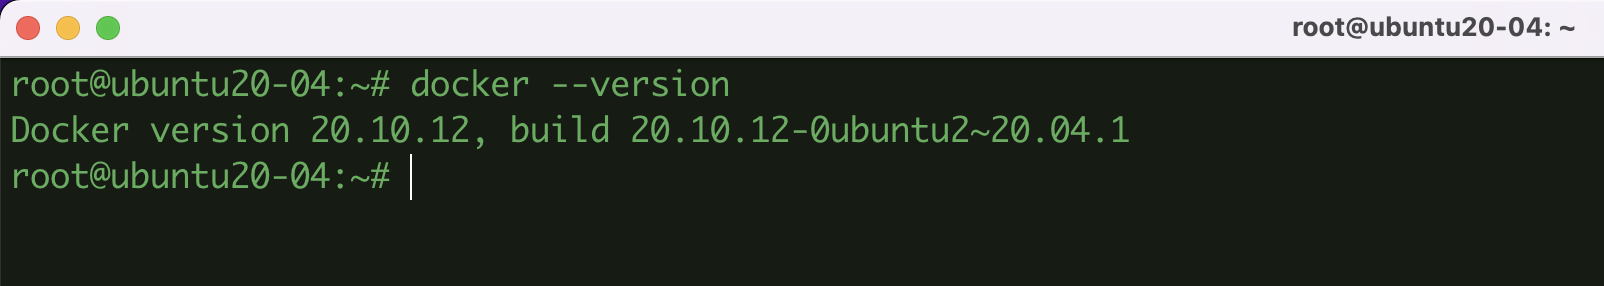 Hướng dẫn cài đặt Docker trên Ubuntu